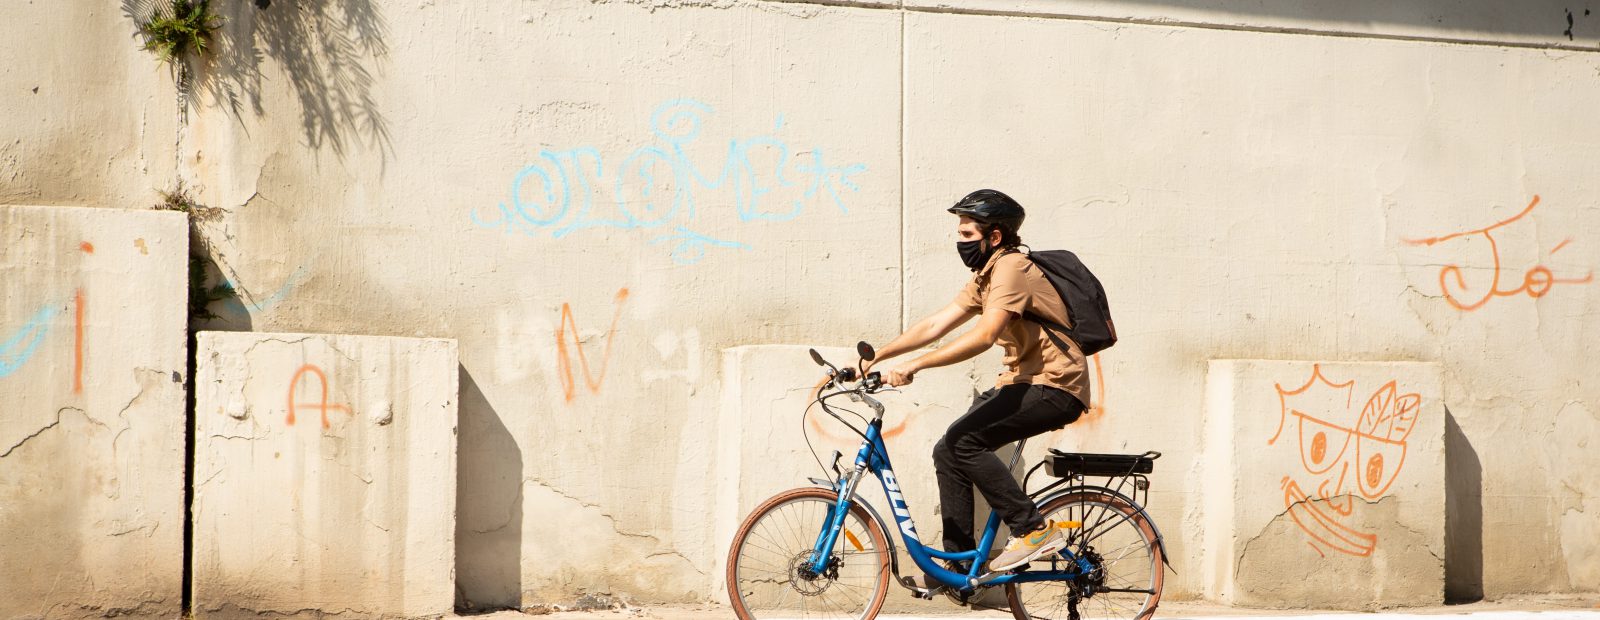 Dia Mundial da Bicicleta: 5 fatos que incentivam o uso como meio de transporte